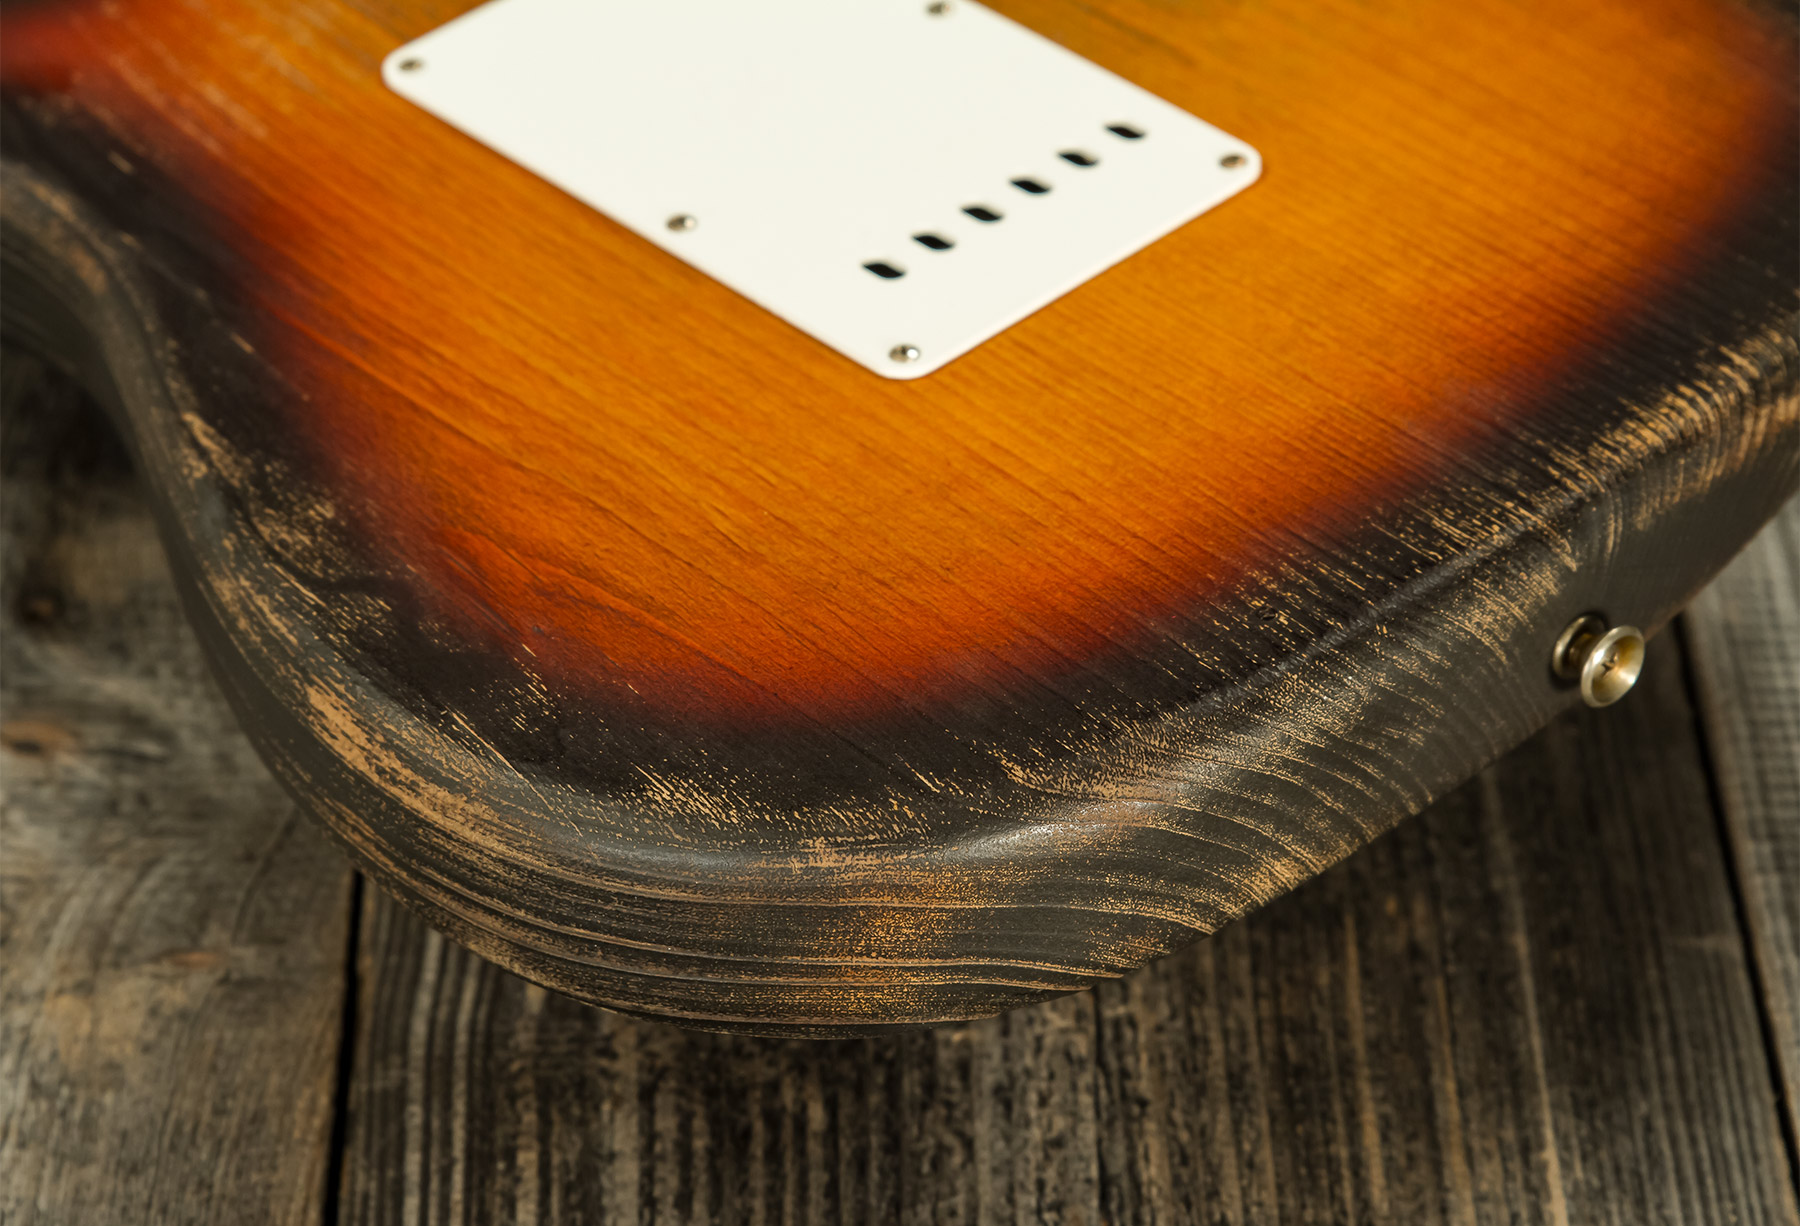 Fender Custom Shop Strat Sandblasted Masterbuilt P.walker #r117542 - Heavy Relic 3-color Sunburst - Elektrische gitaar in Str-vorm - Variation 6